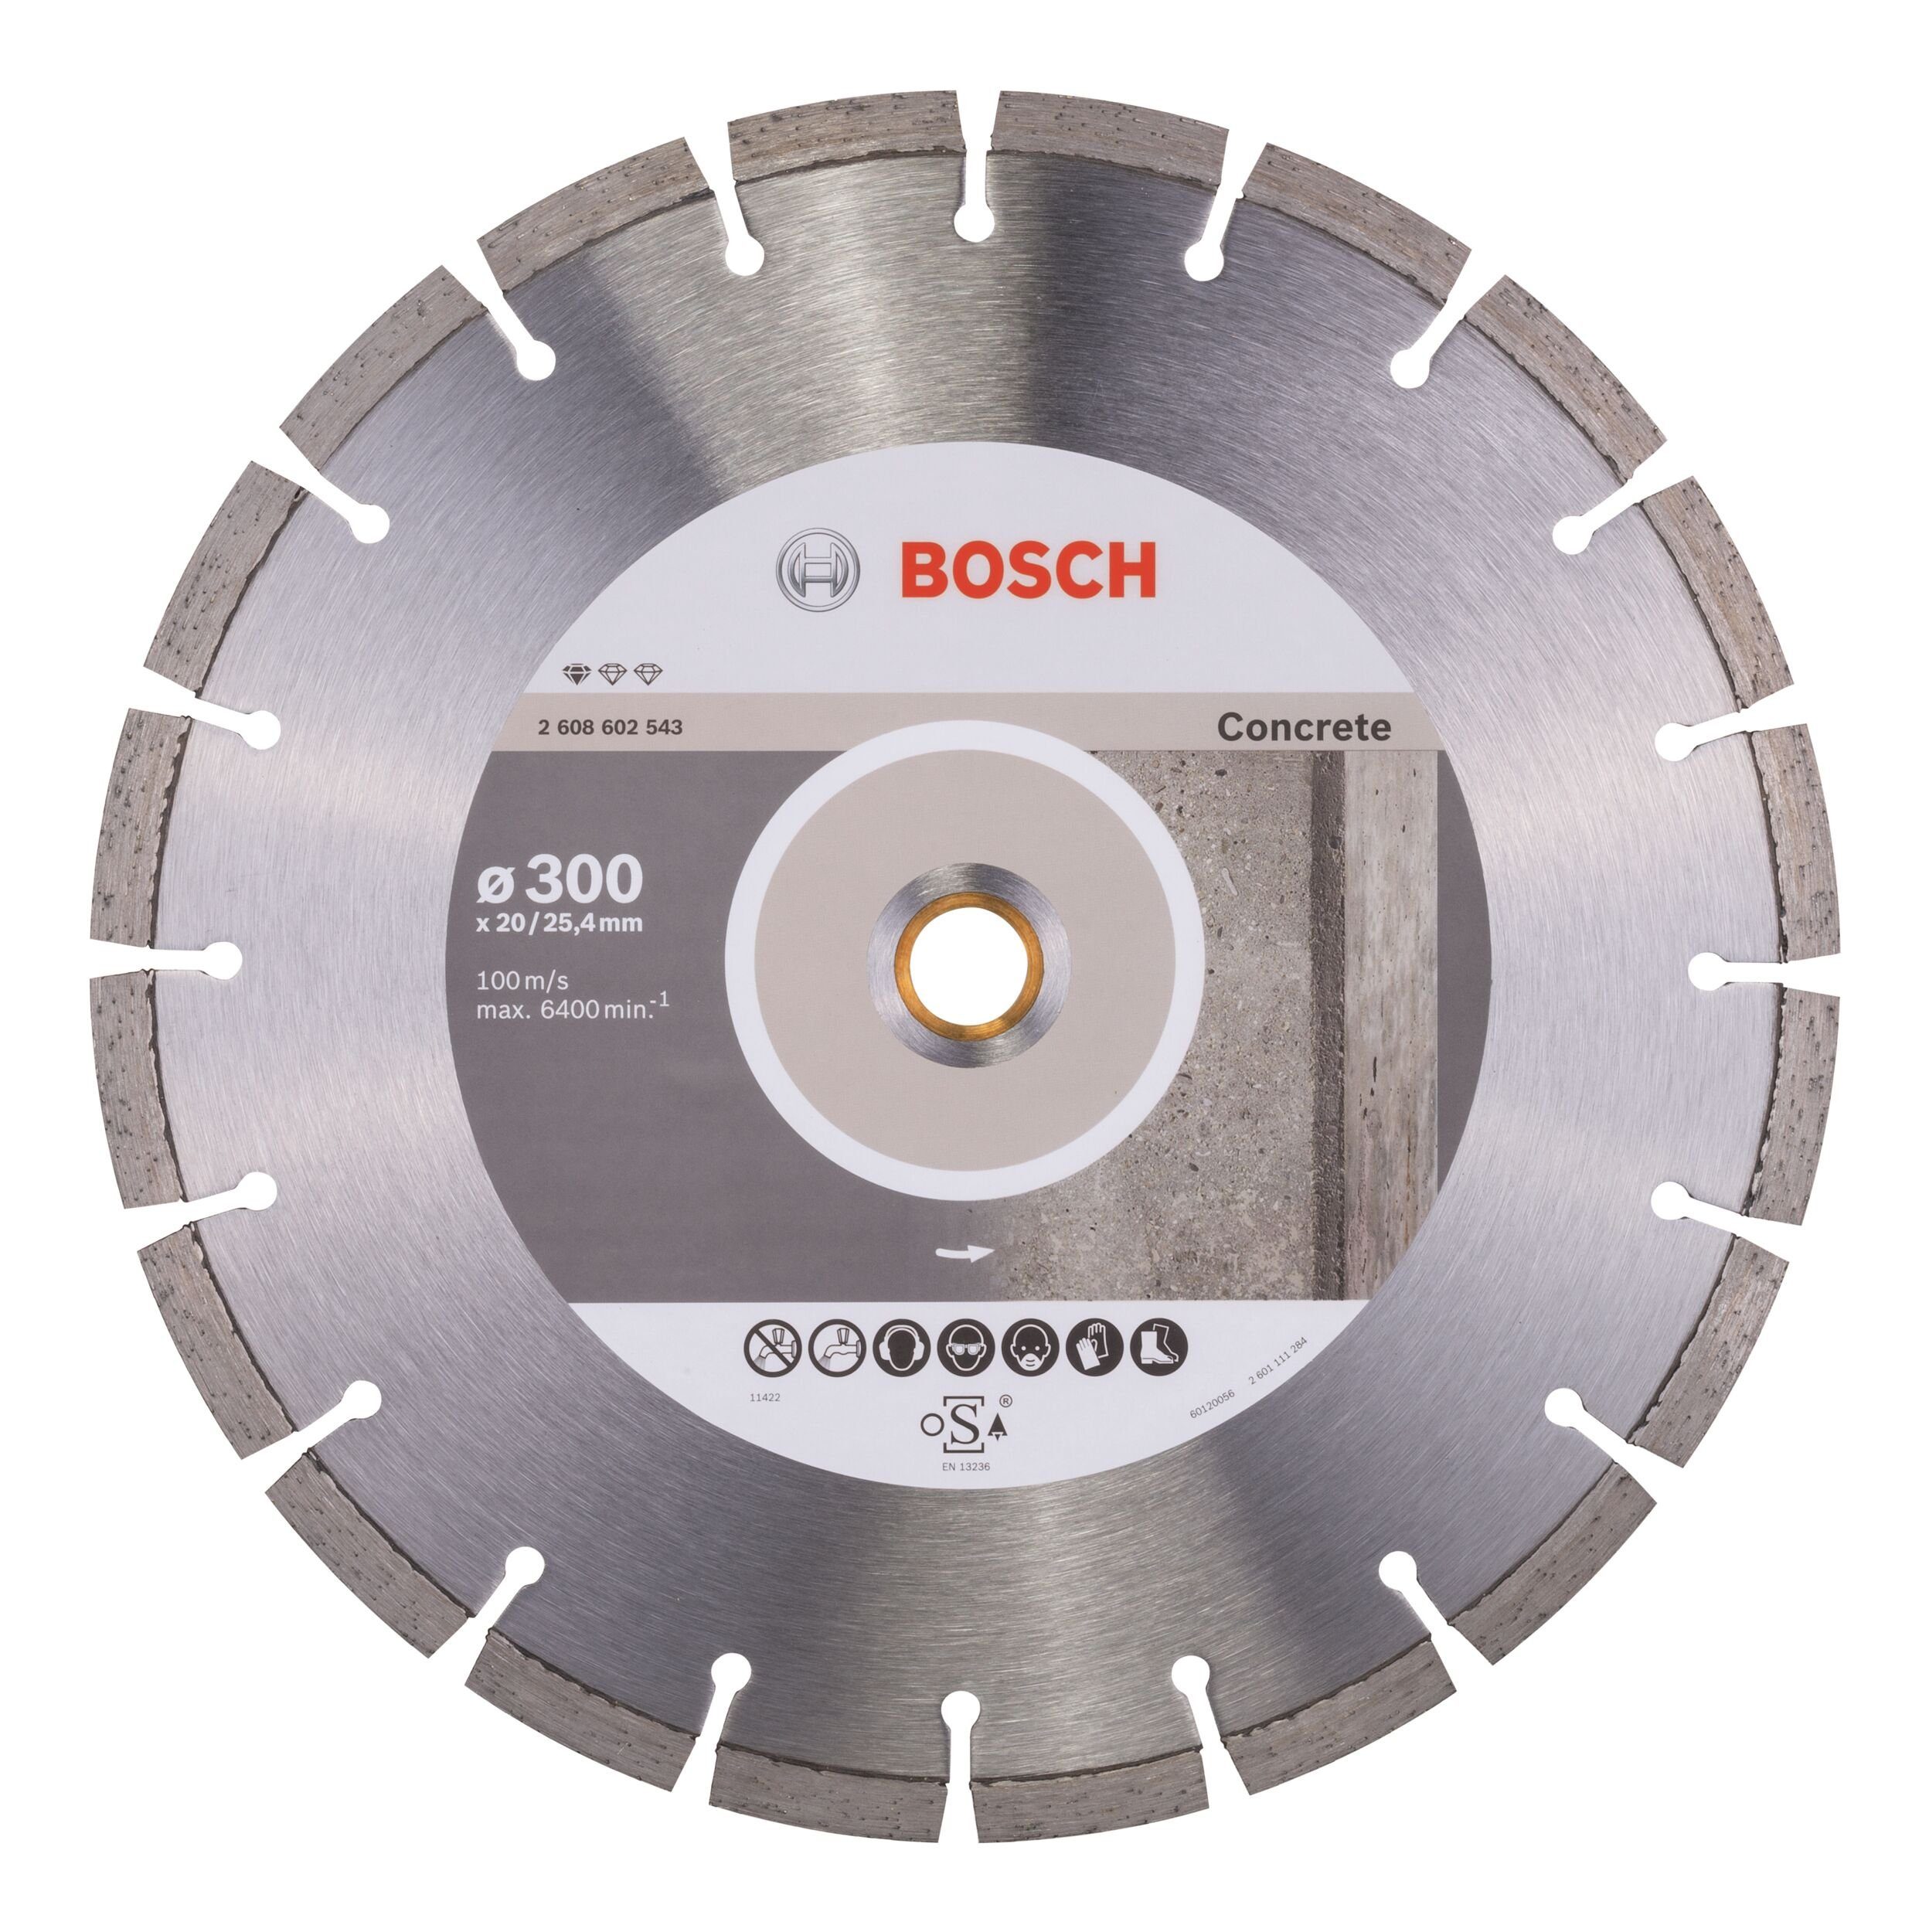 BOSCH Trennscheibe, Ø 300 mm, Standard for Concrete Diamanttrennscheibe - 300 x 20/25,4 x 2,8 x